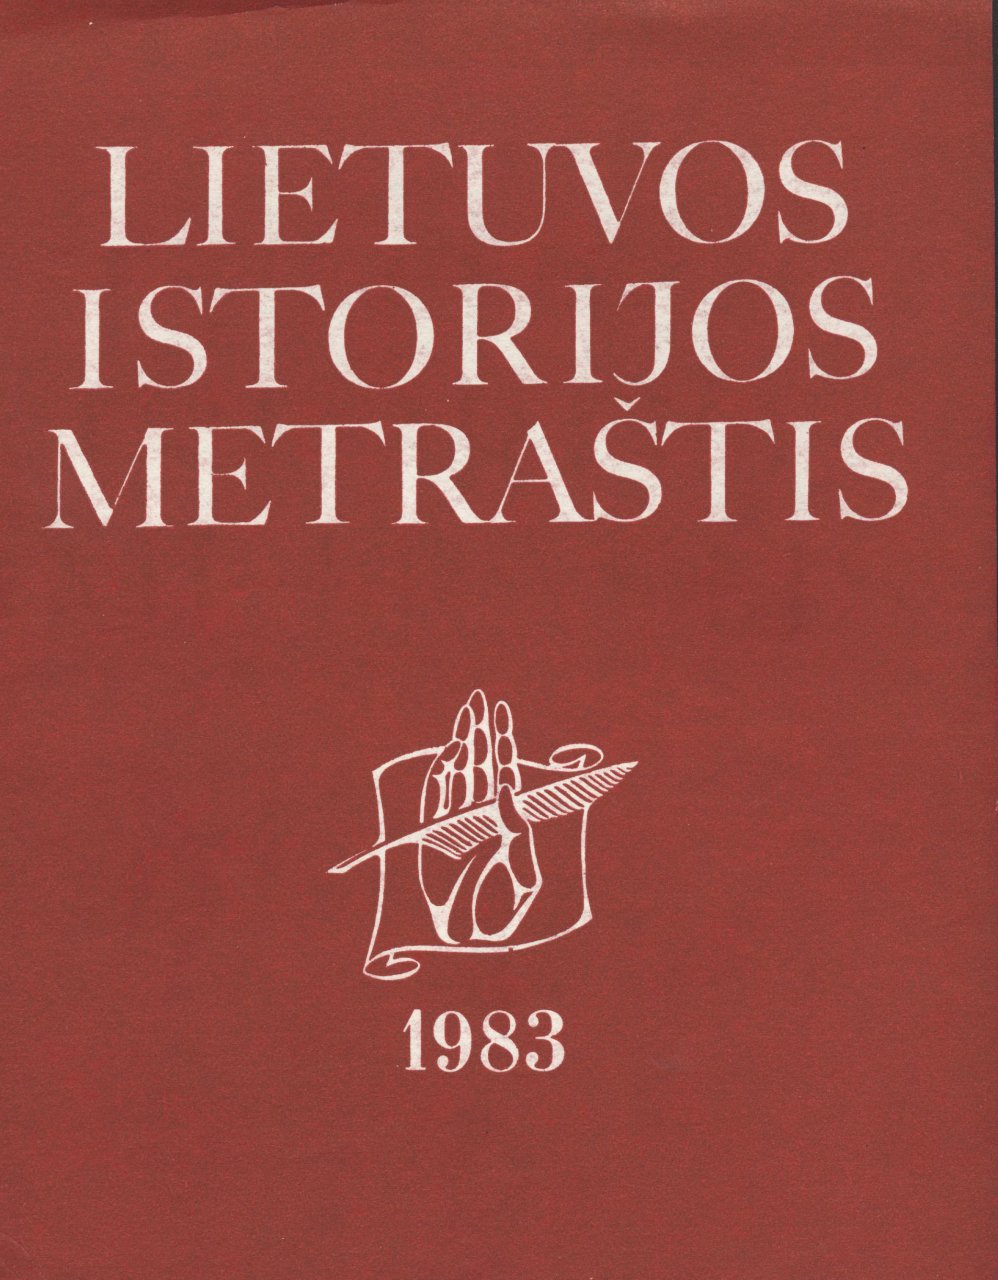 Lietuvos istorijos metraštis 1983 metai